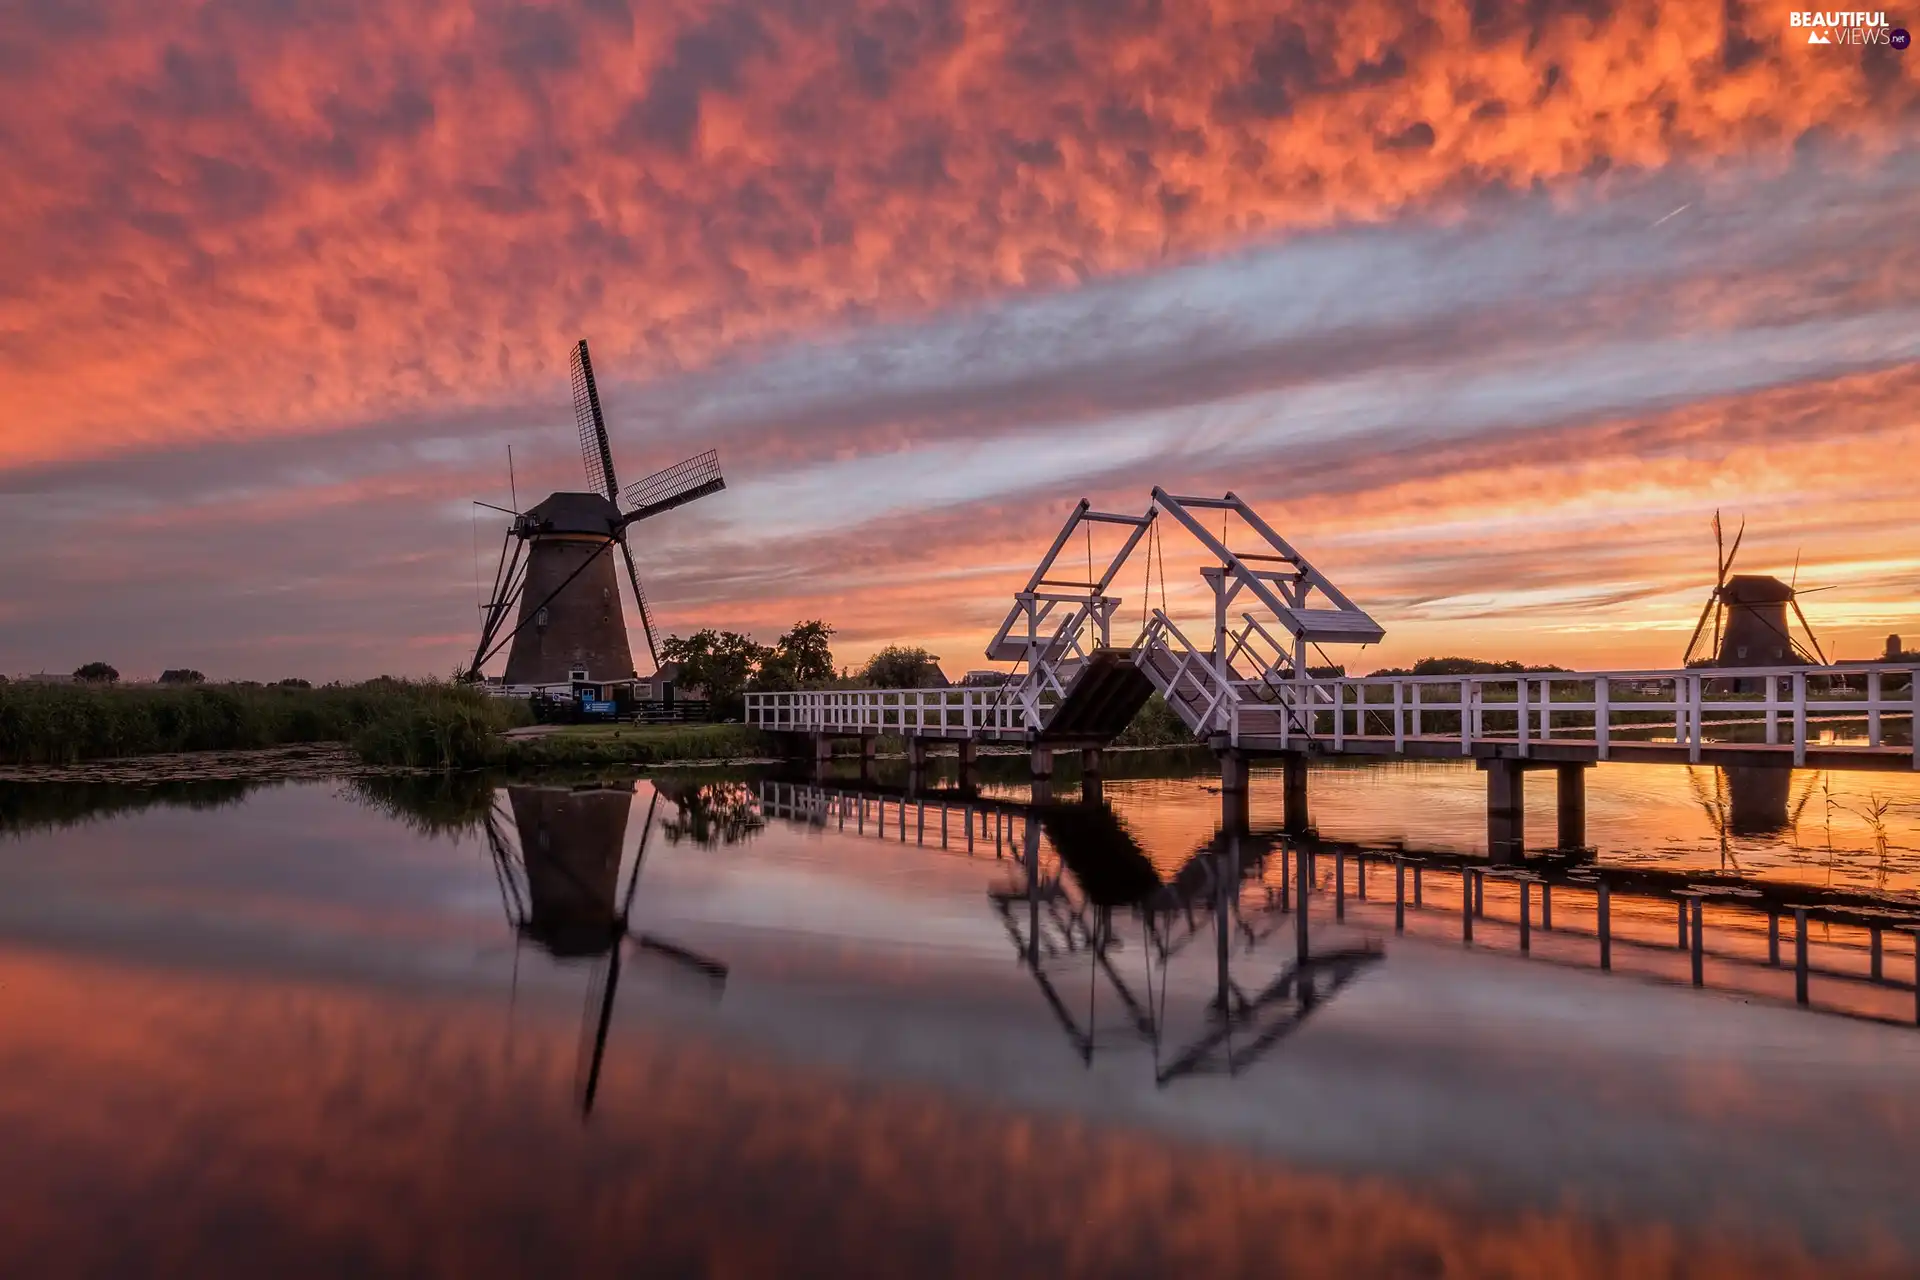 bridge, Alblasserwaard Region, Great Sunsets, Kinderdijk Village, Netherlands, Windmills, River